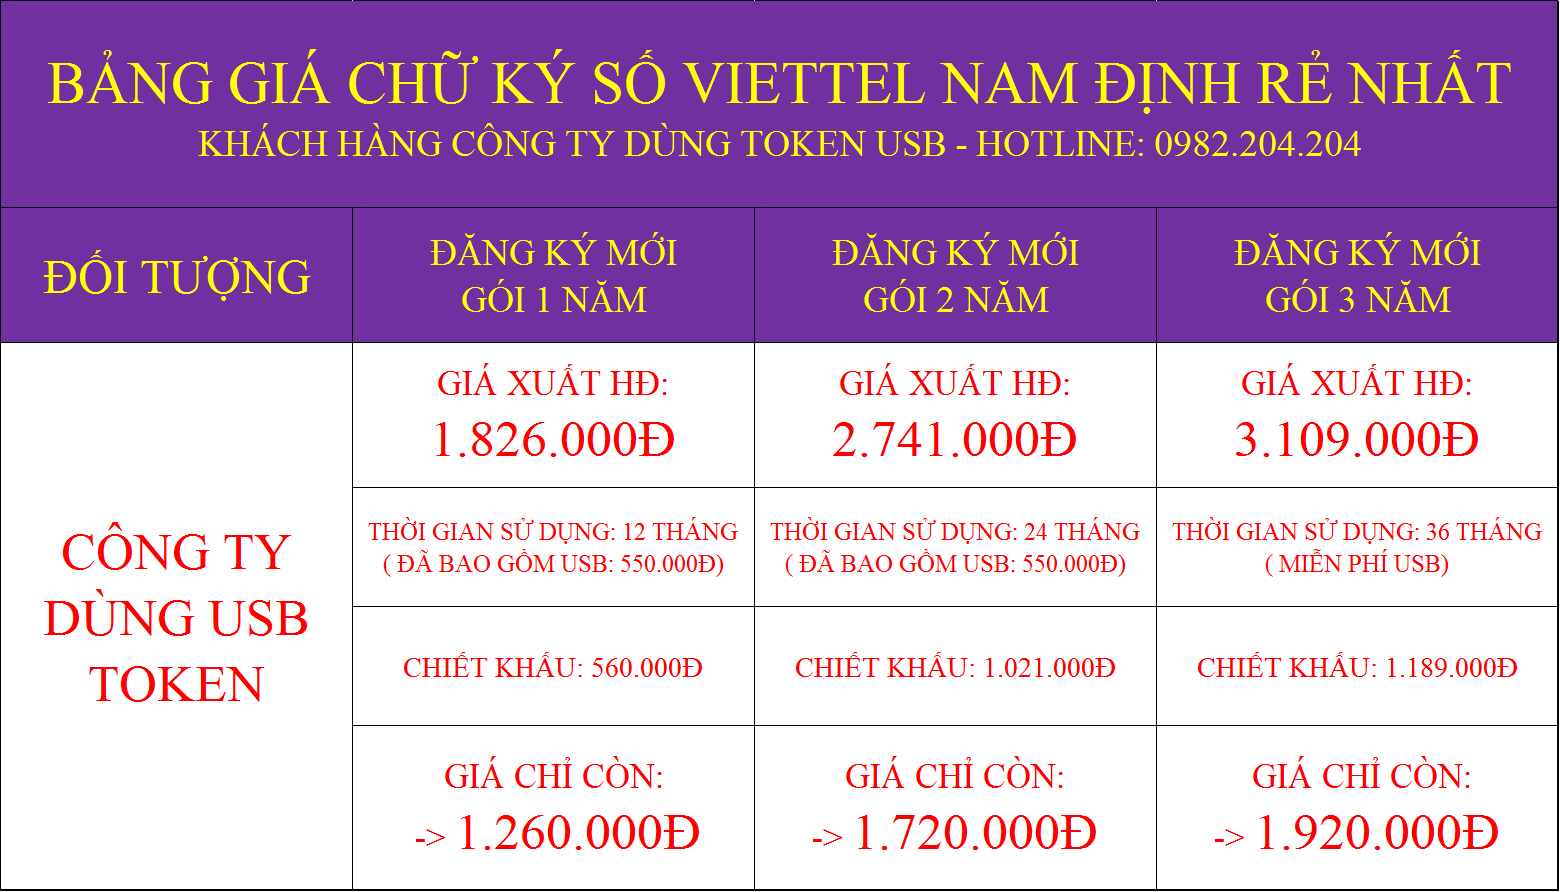 Bảng giá chữ ký số Viettel Nam Định rẻ nhất